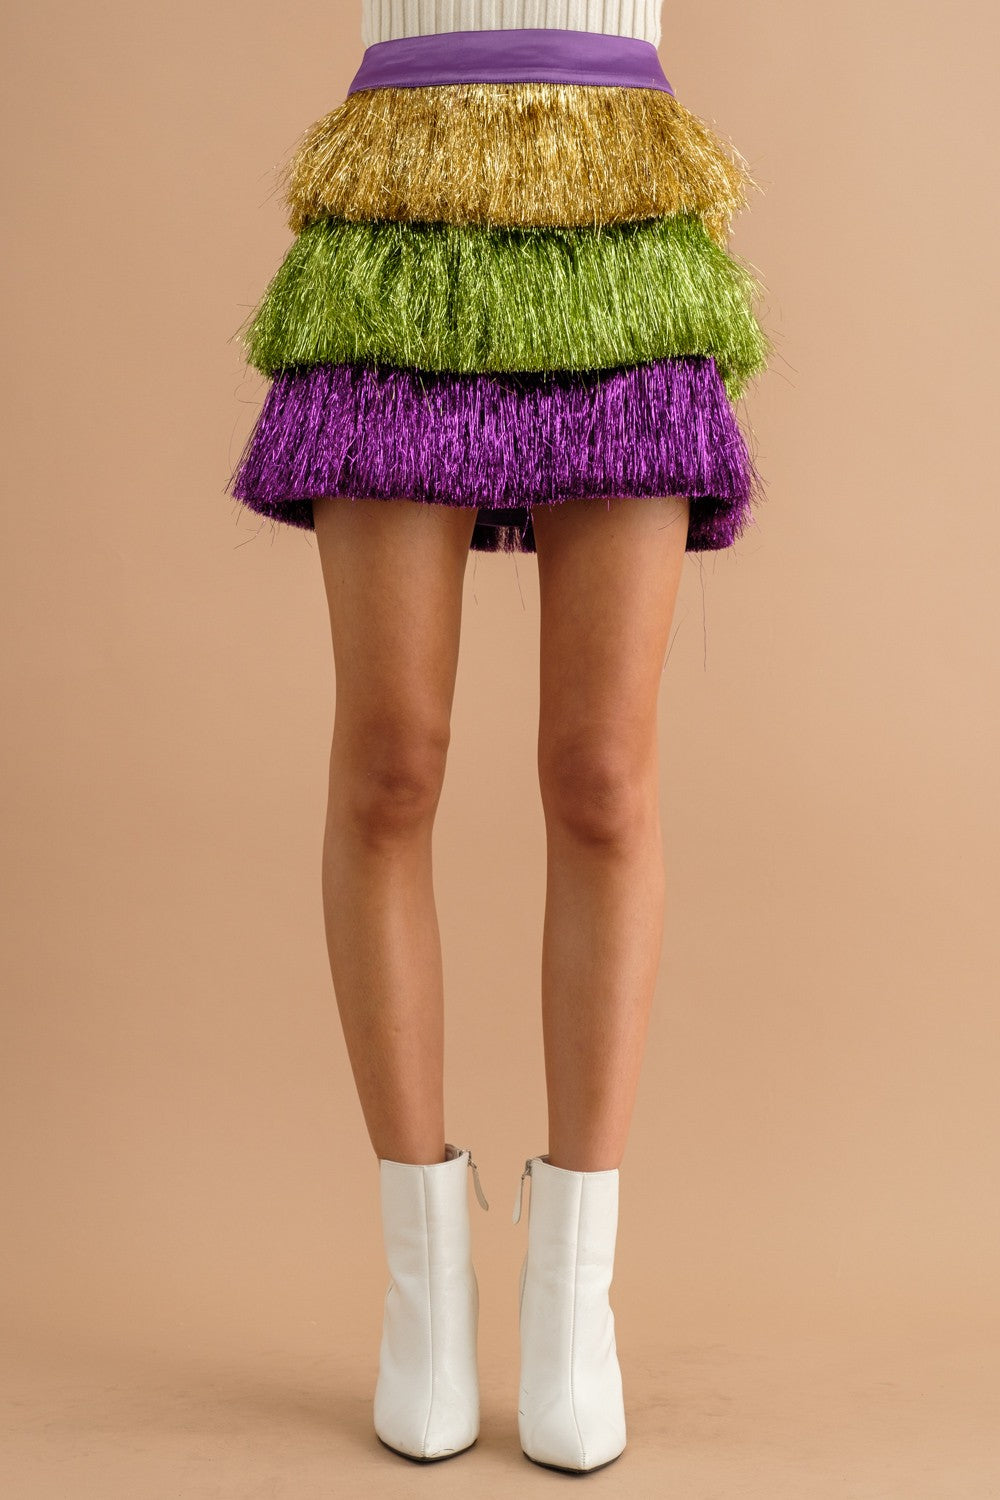 Mardi Gras Tinsel Fringe Skirt